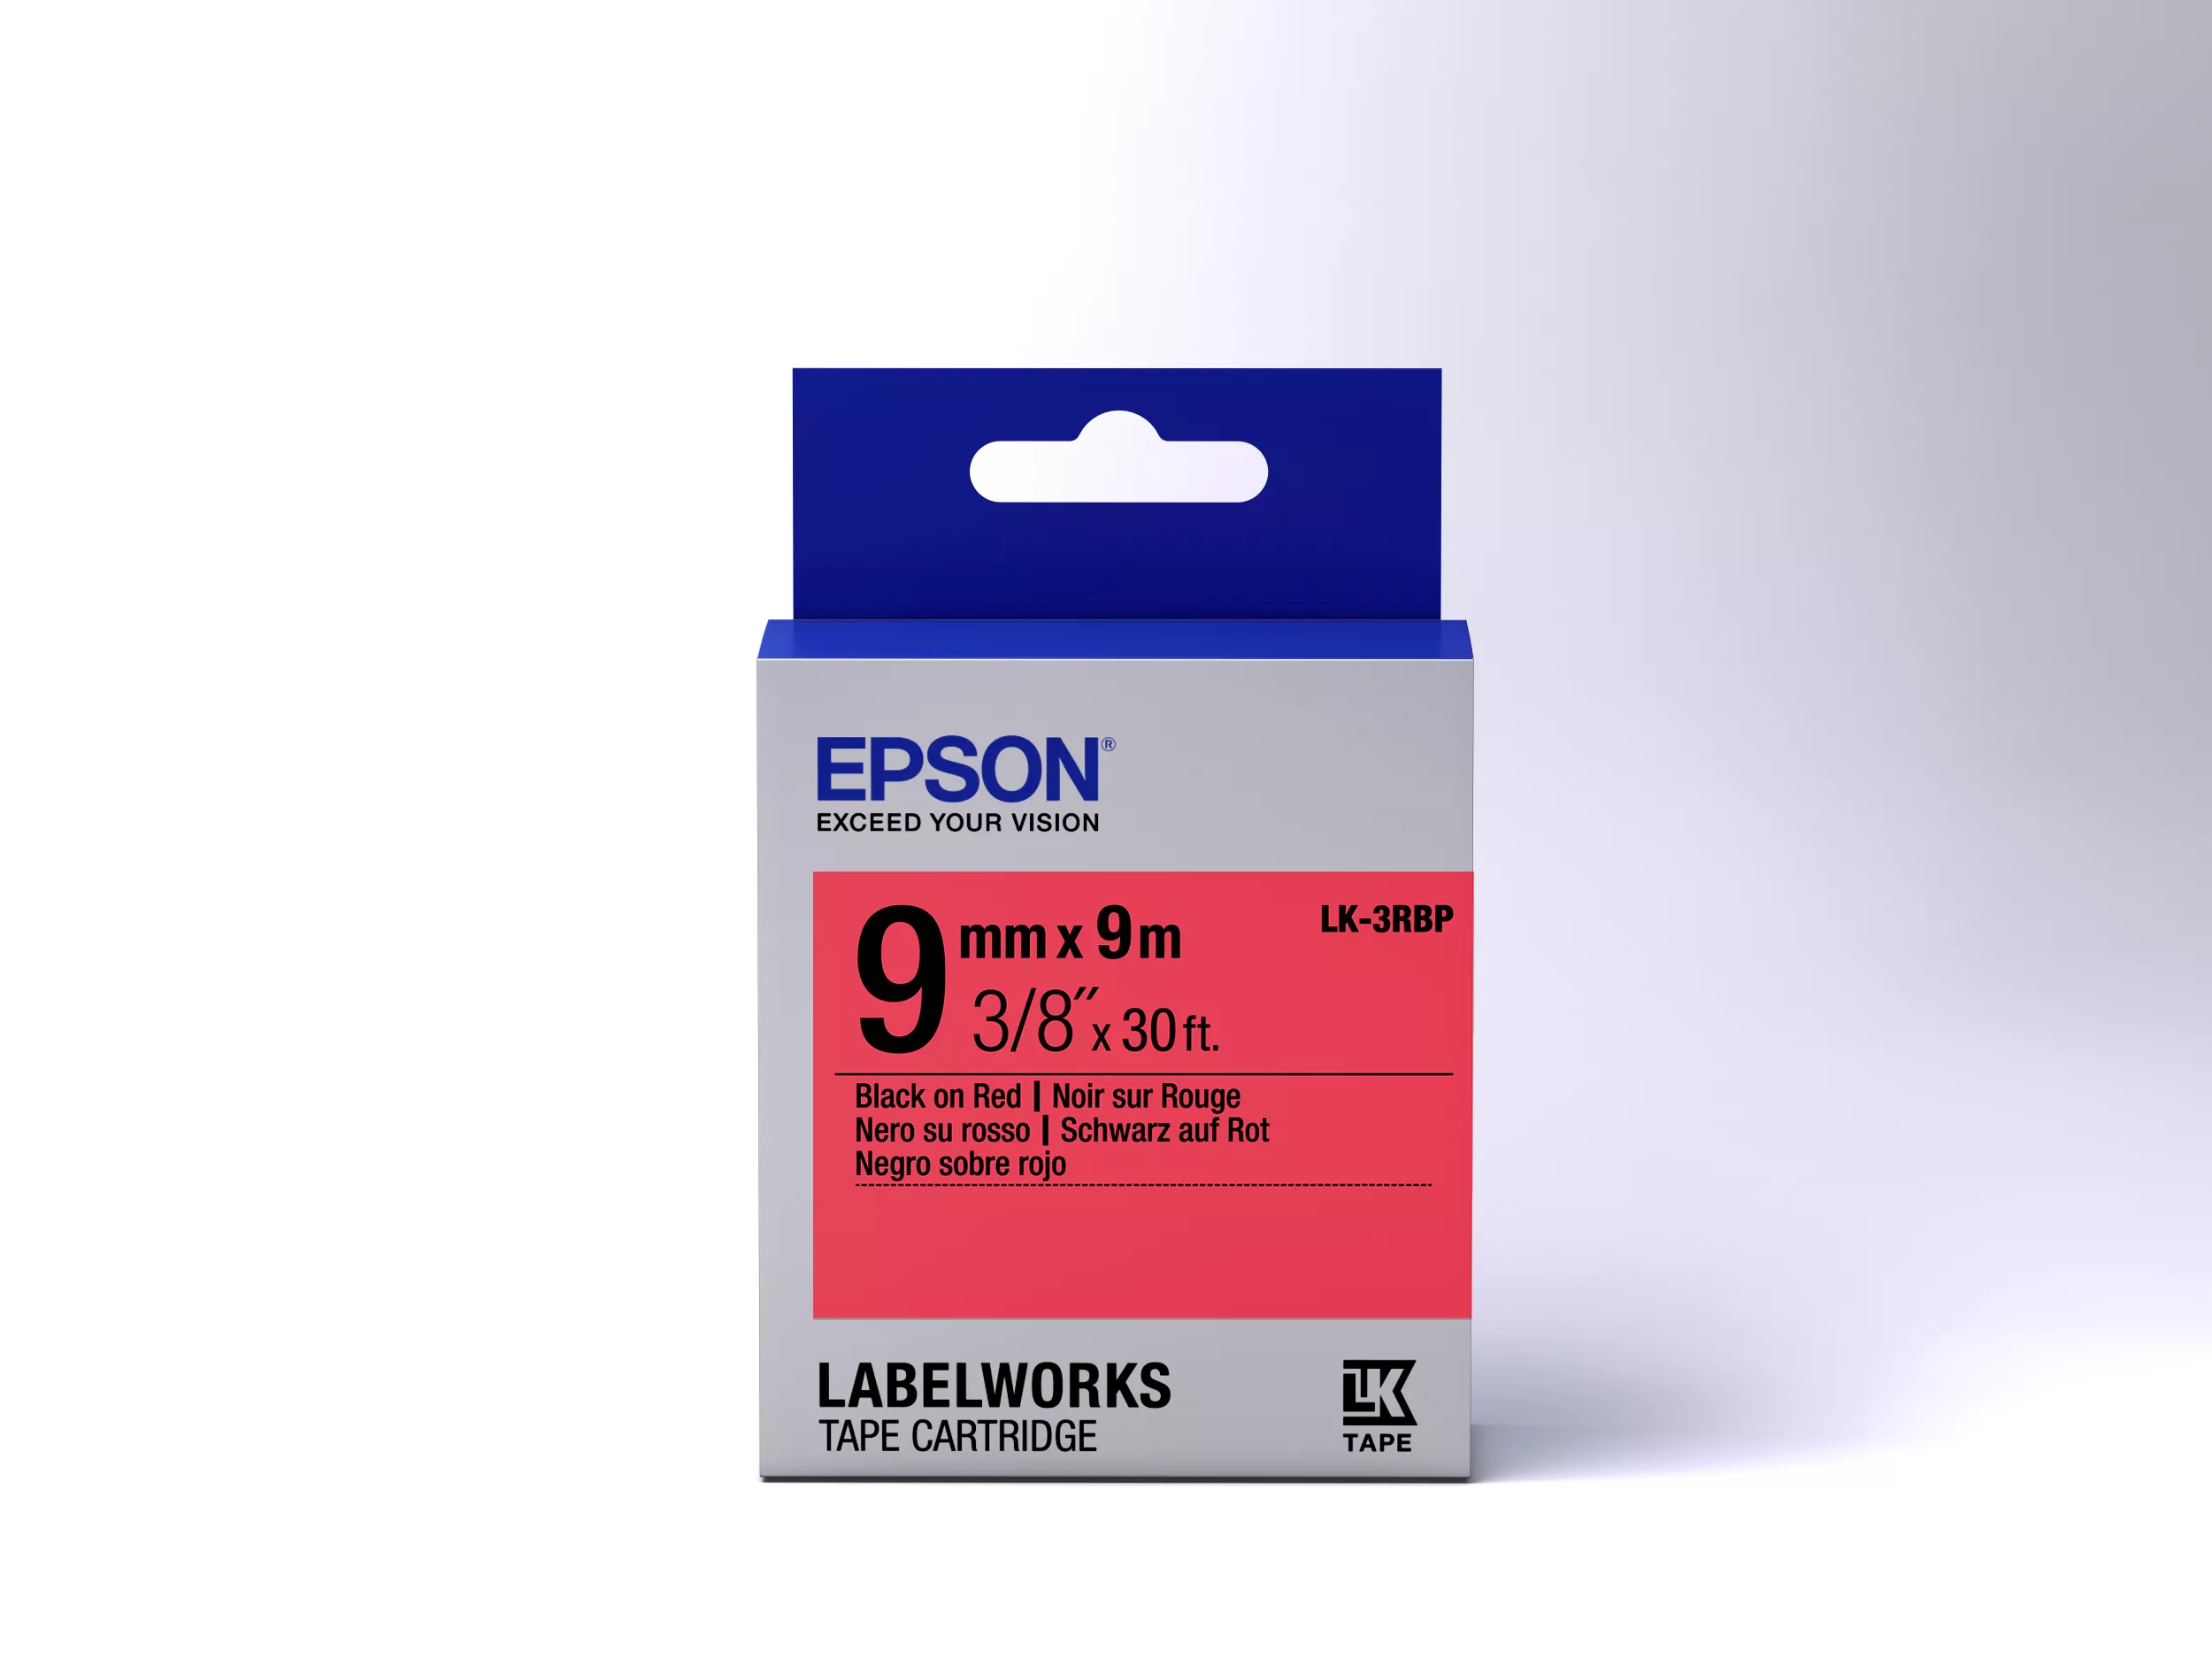 Vente Epson LK-3RBP - Couleur Pastel - Noir sur Epson au meilleur prix - visuel 2